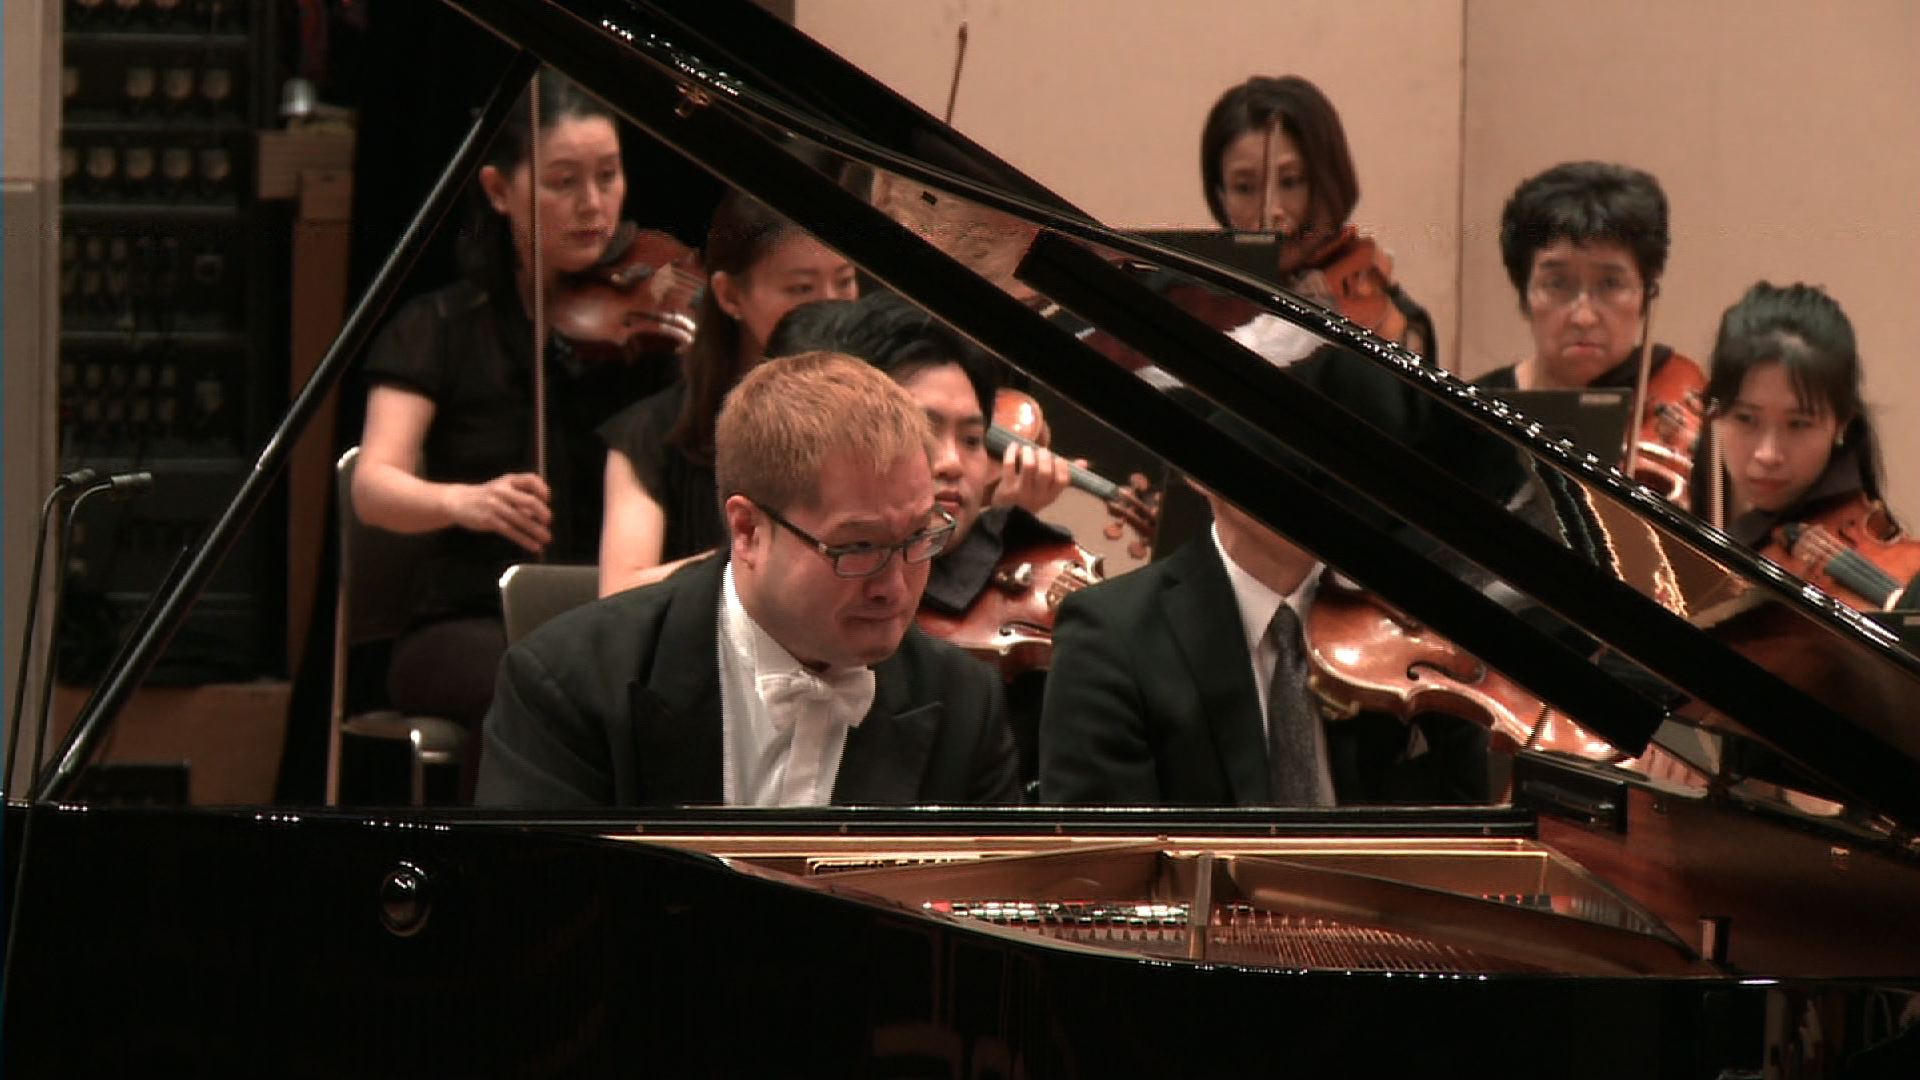 ピアノ：田村 響
指揮：山下一史
広島交響楽団（無観客公演）
リスト：ピアノ協奏曲第1番より
Hibiki Tamura, Piano
Kazufumi Yamashita, Conductor
Hiroshima Symphony Orchestra
F. Liszt: Piano Concert No.1